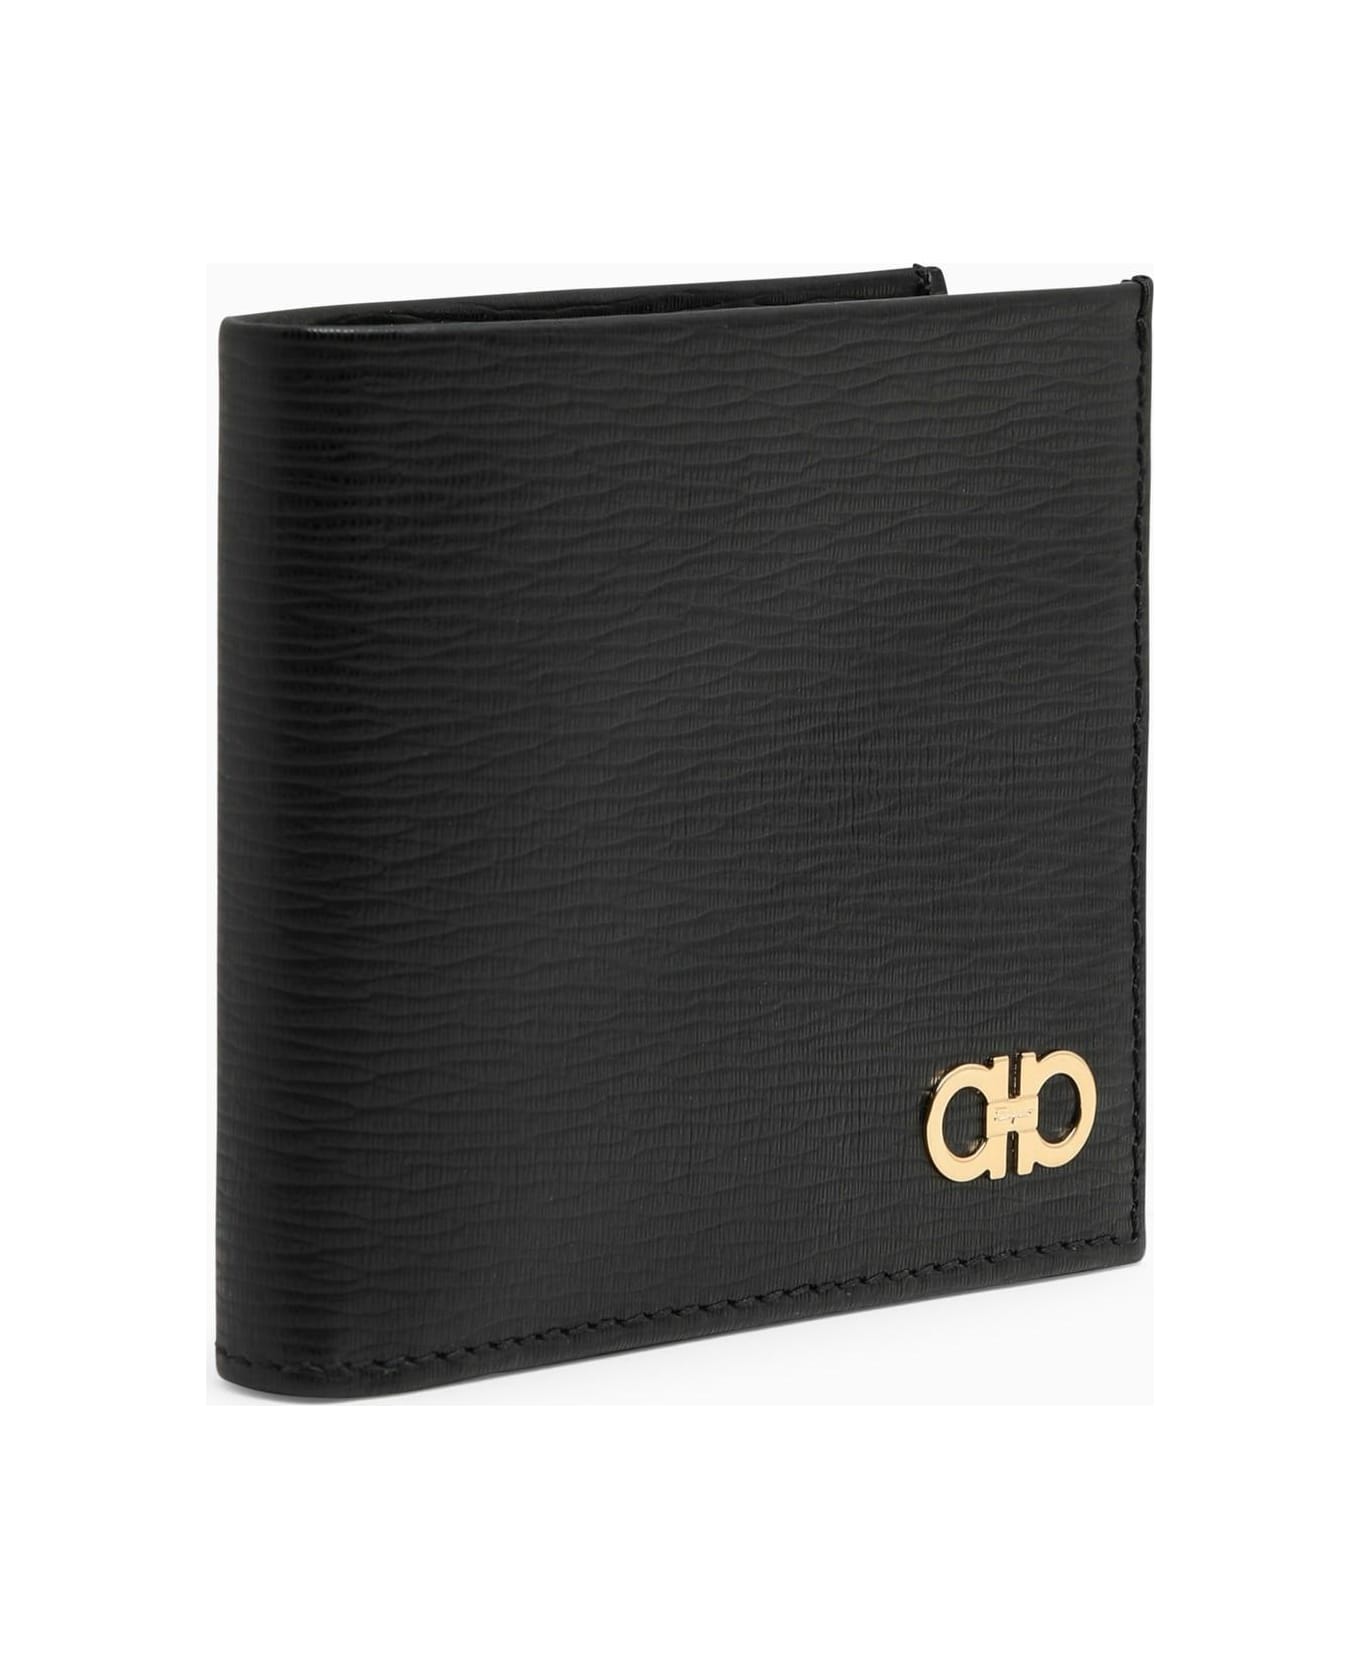 Ferragamo Revival Black Wallet With Gancini Logo - BLACK